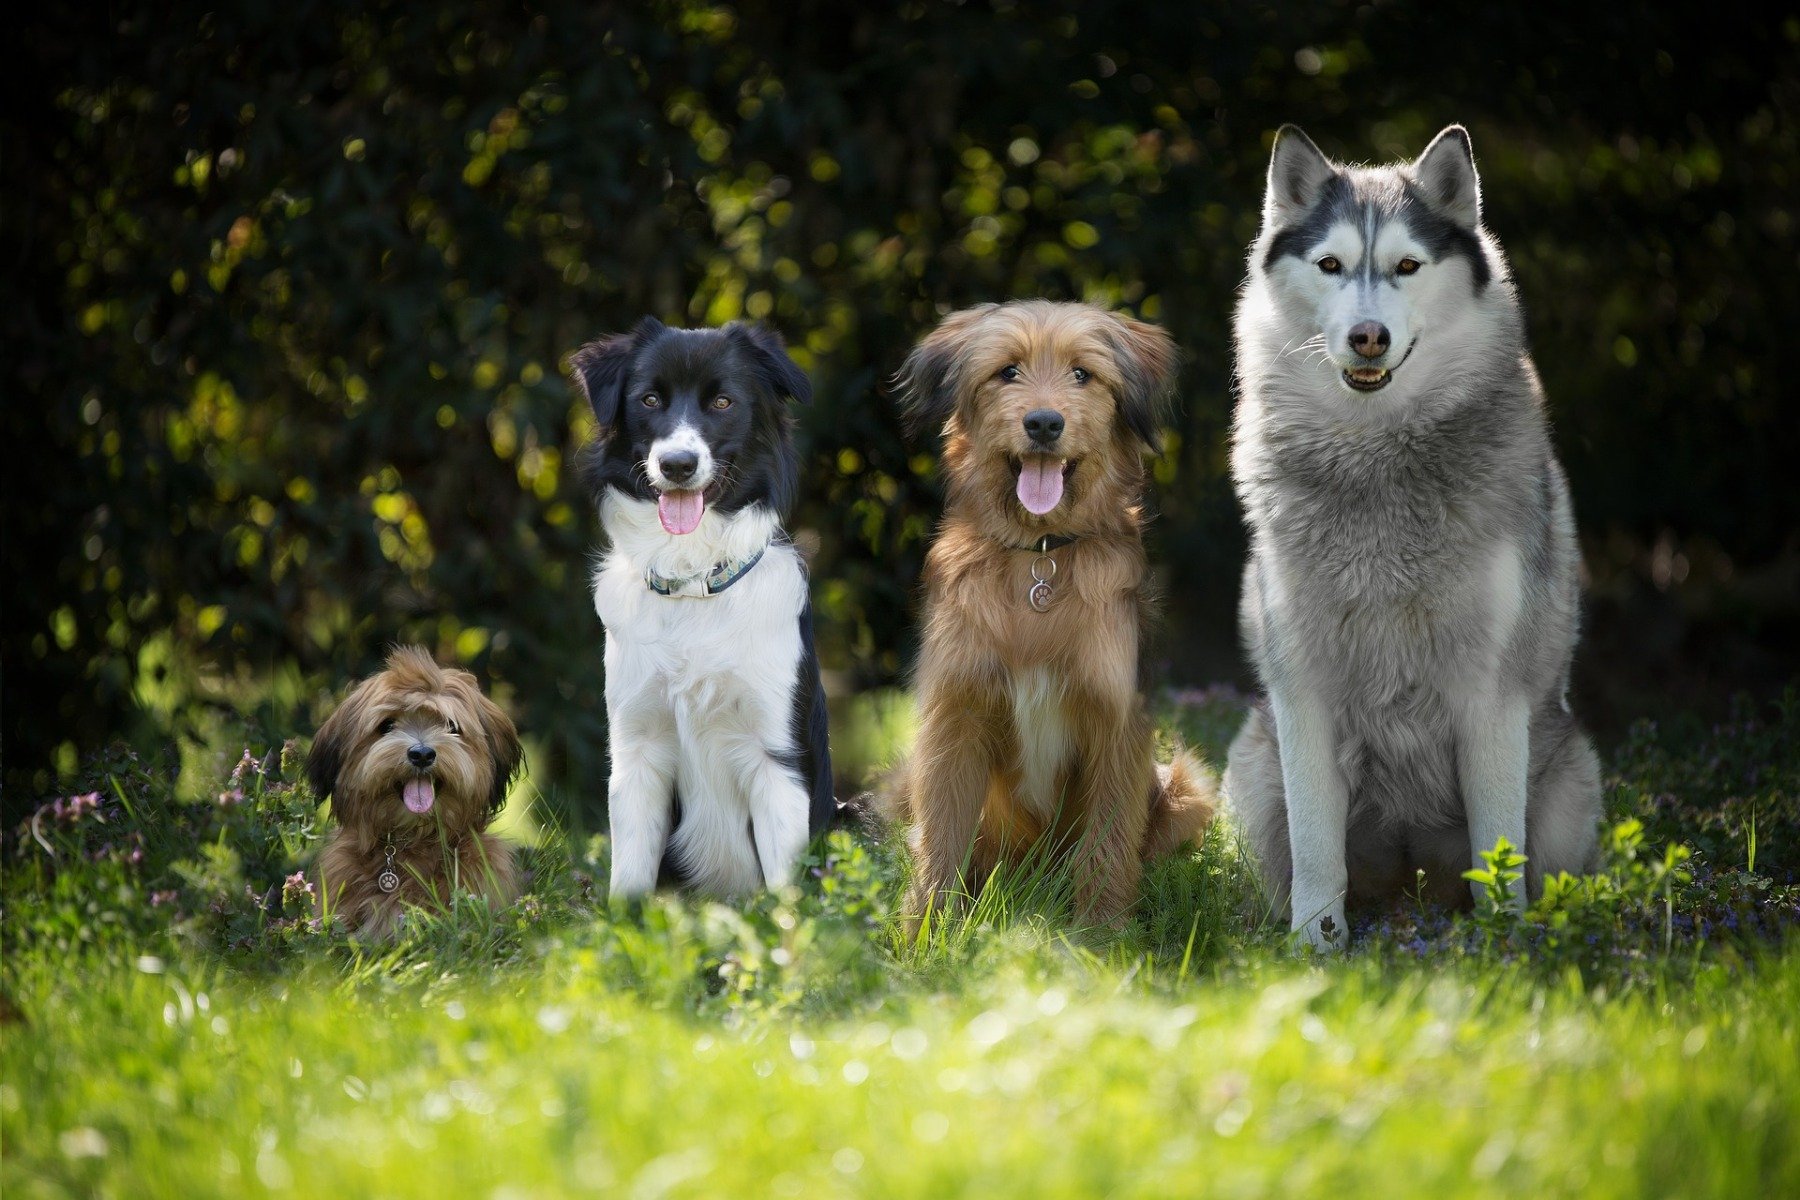 Cztery grzecznie siedzące psy.